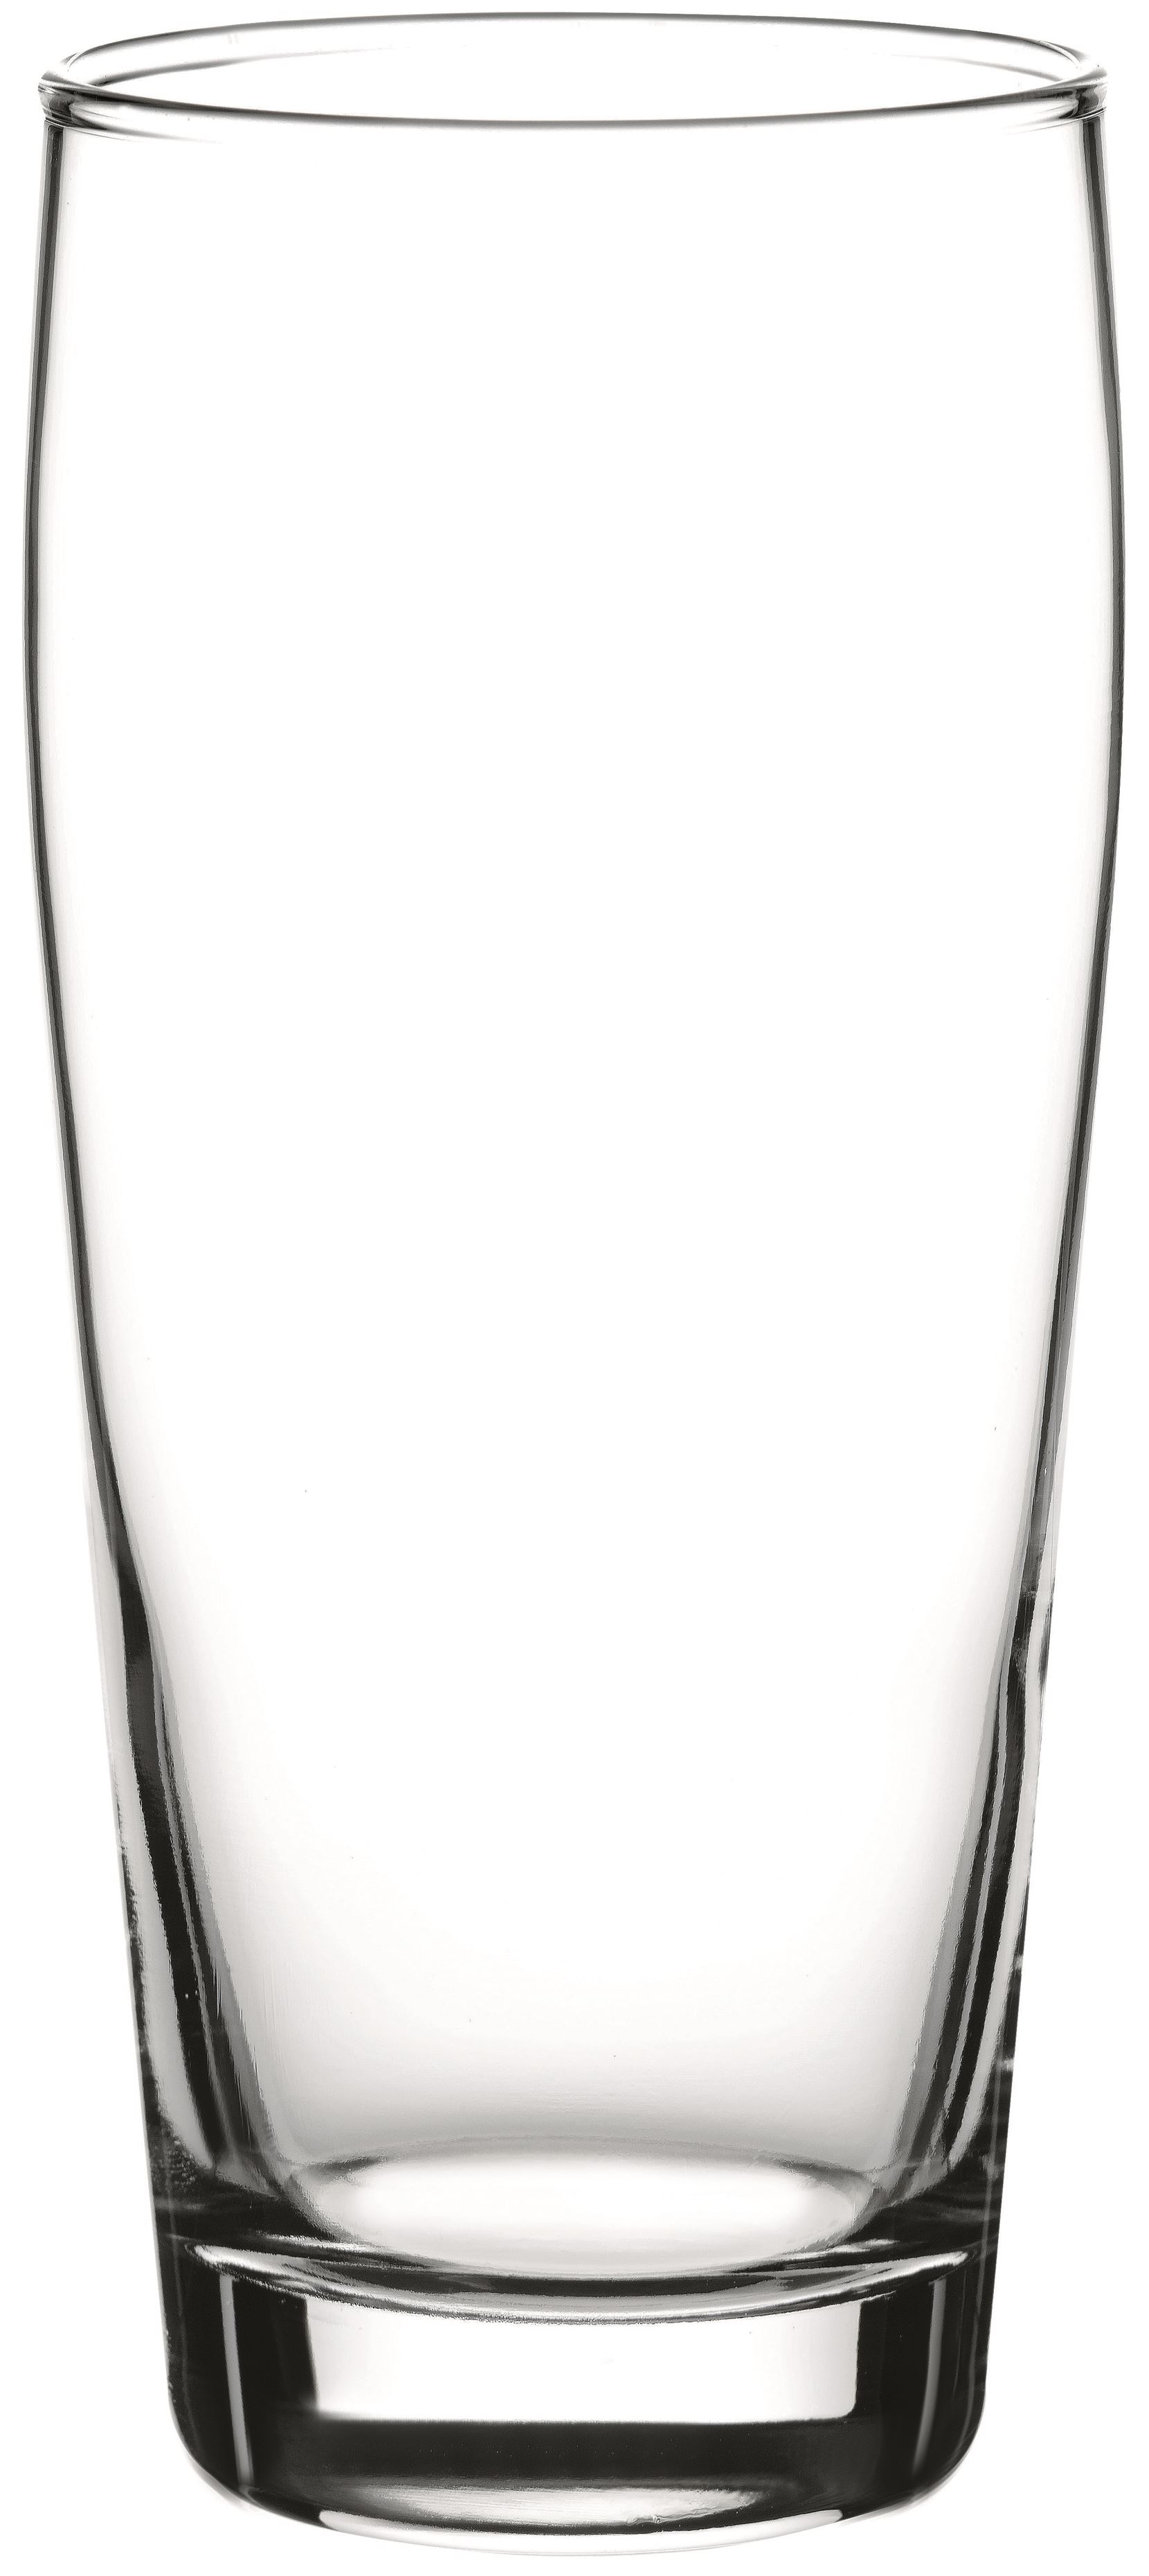 WIllibecher, mit Eiche, 0,465 ltr., Glas